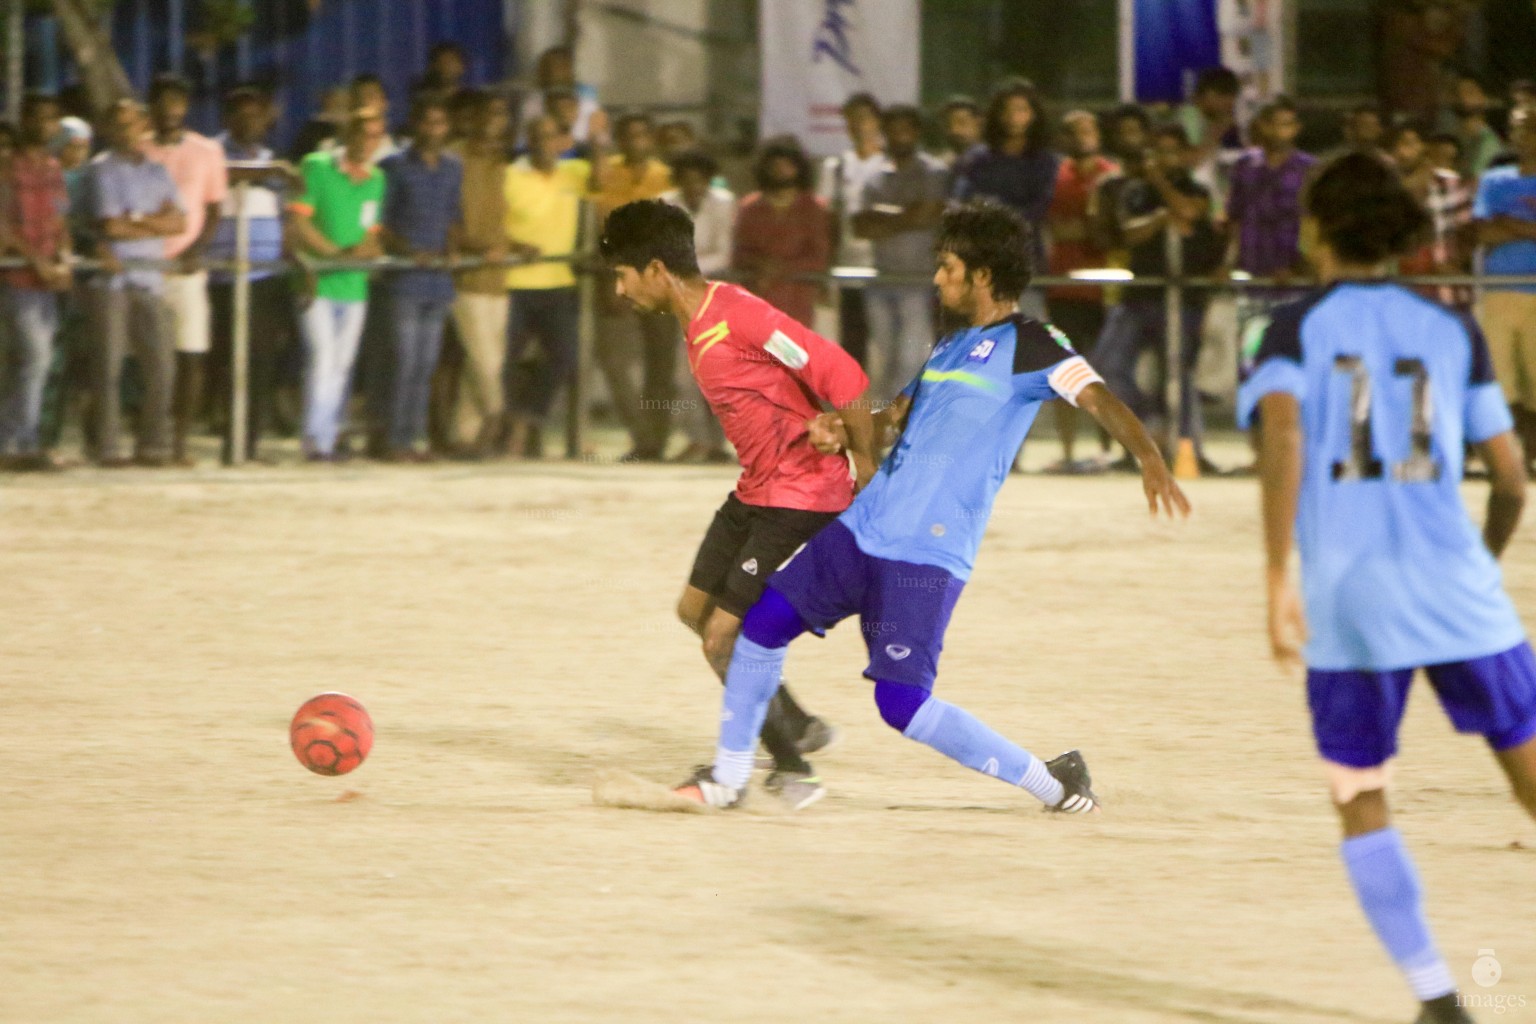 Day 3 of Milo Club Maldives Cup Futsal Tournament in Male', Maldives, Monday, March. 27, 2016. (Images.mv Photo/Abdulla Abeedh).